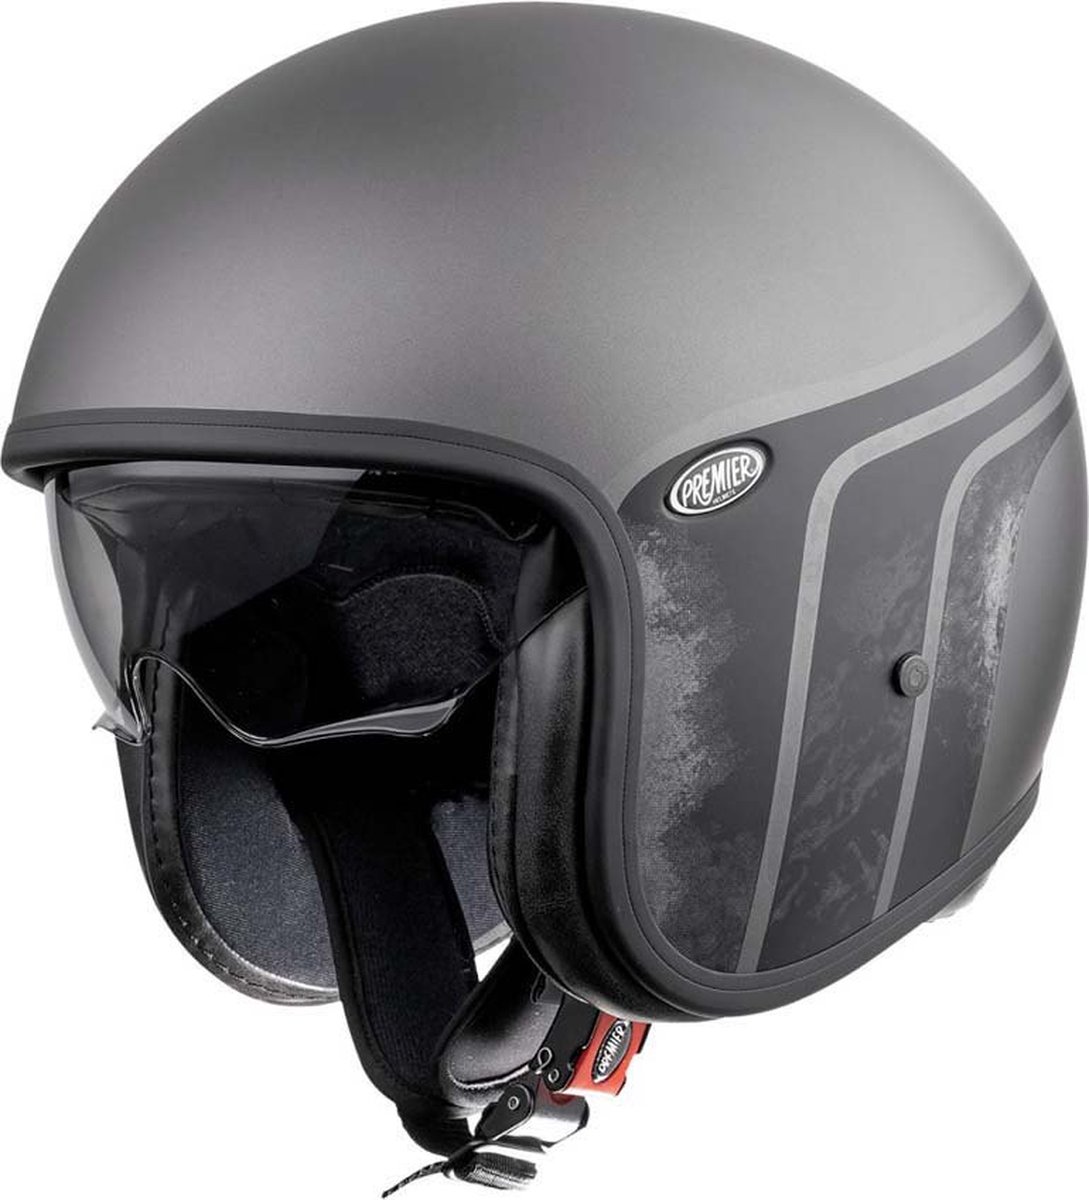 Premier Helmets 23 Vintage Btr 17 Bm 22.06 Jet Helm Zwart,Grijs XL